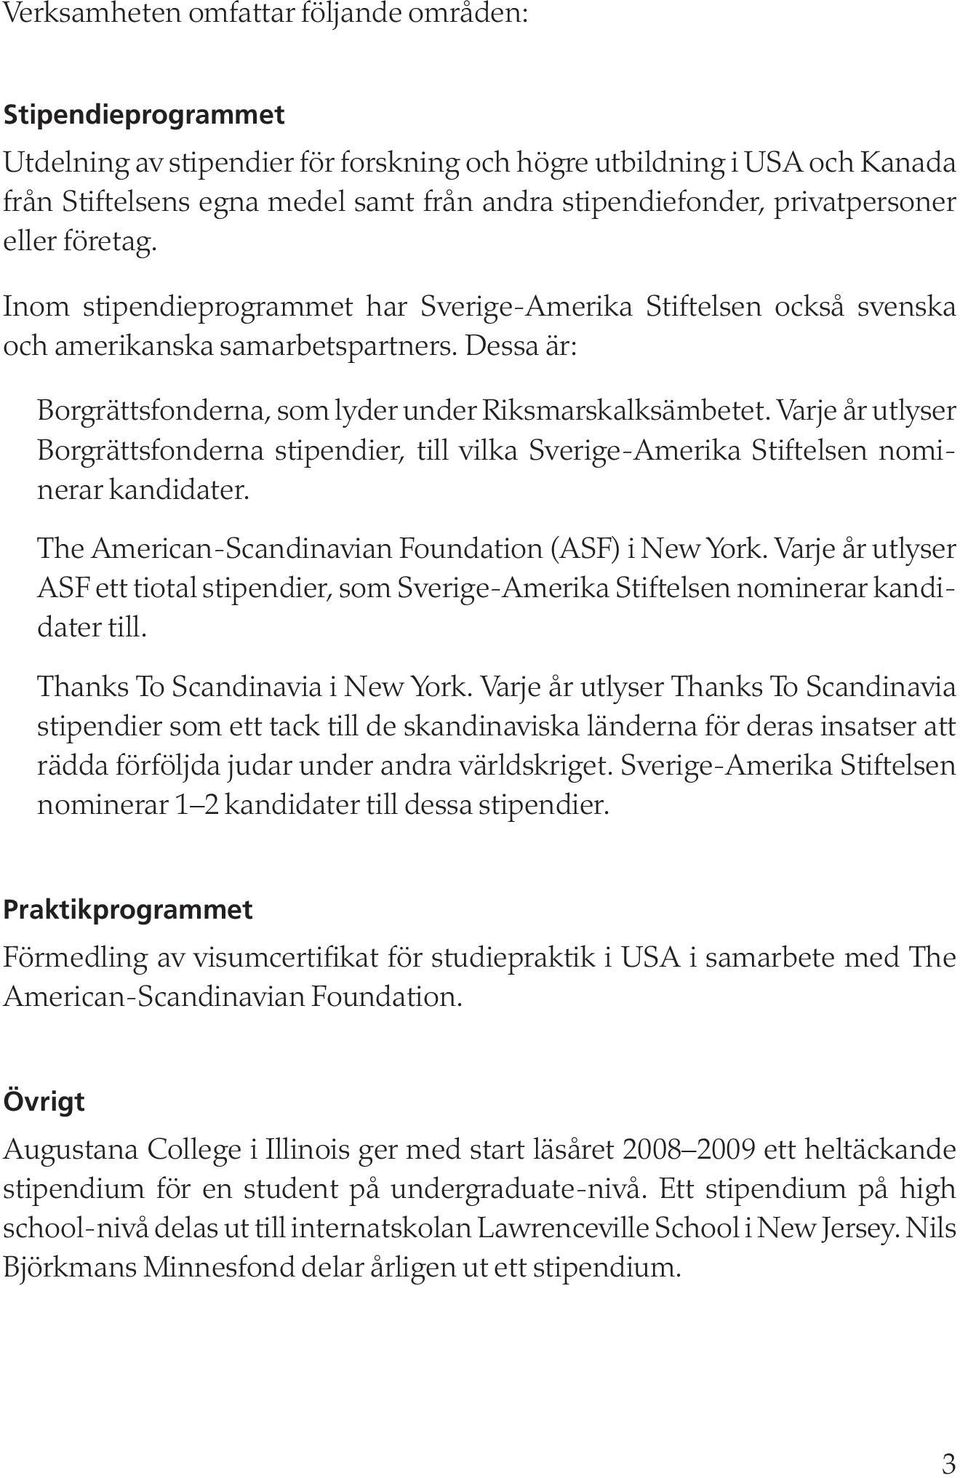 Dessa är: Borgrättsfonderna, som lyder under Riksmarskalksämbetet. Varje år utlyser Borgrättsfonderna stipendier, till vilka Sverige-Amerika Stiftelsen nominerar kandidater.